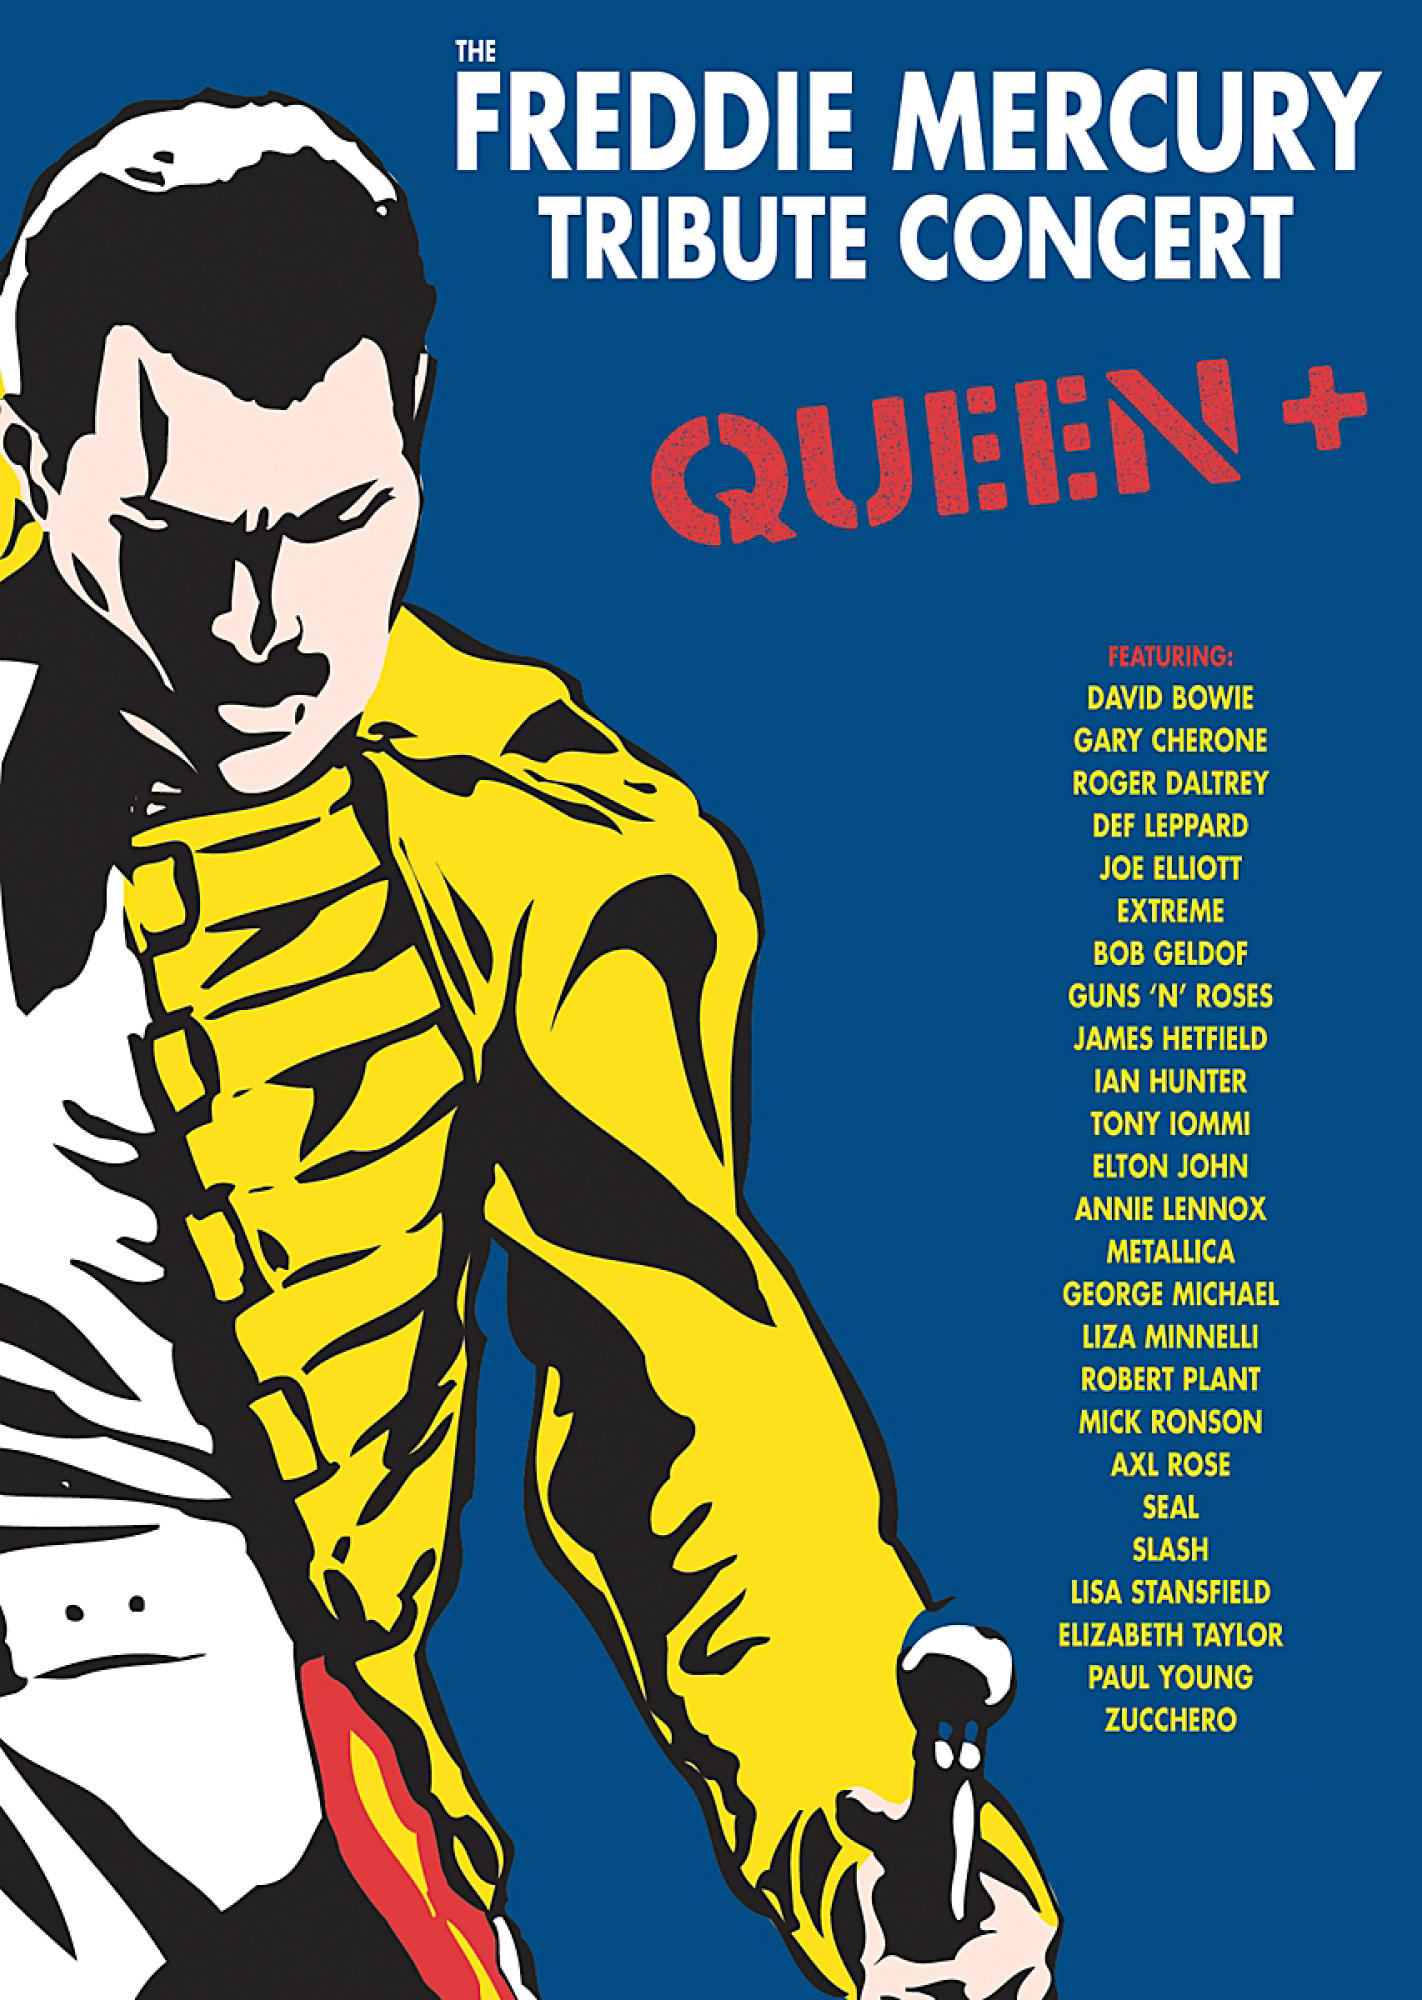 Concert (DVD) Tribute The + - Freddie VARIOUS, Mercury Queen - - Queen